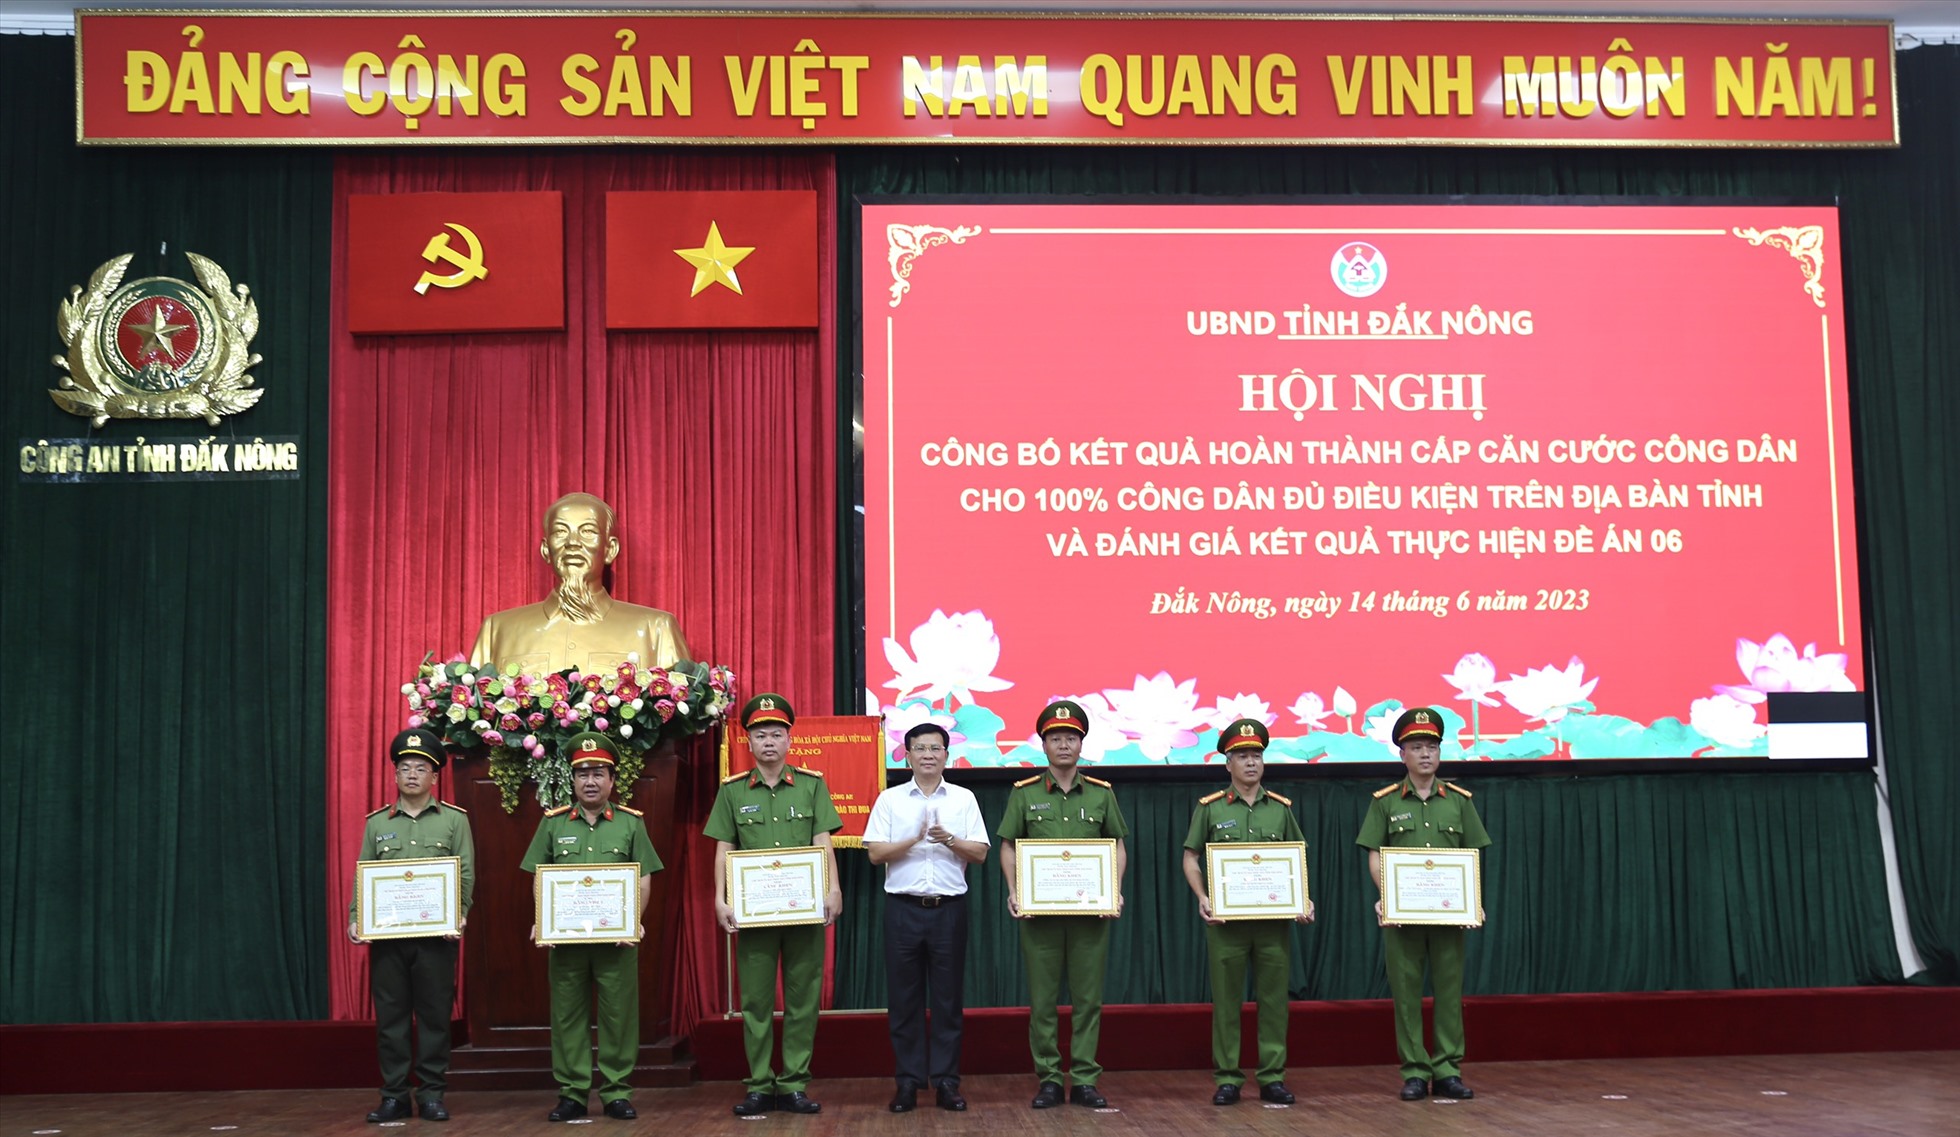 Chủ tịch UBND tỉnh Đắk Nông Hồ Văn Mười trao bằng khen cho các tập thể, cá nhân. Ảnh: Minh Quỳnh